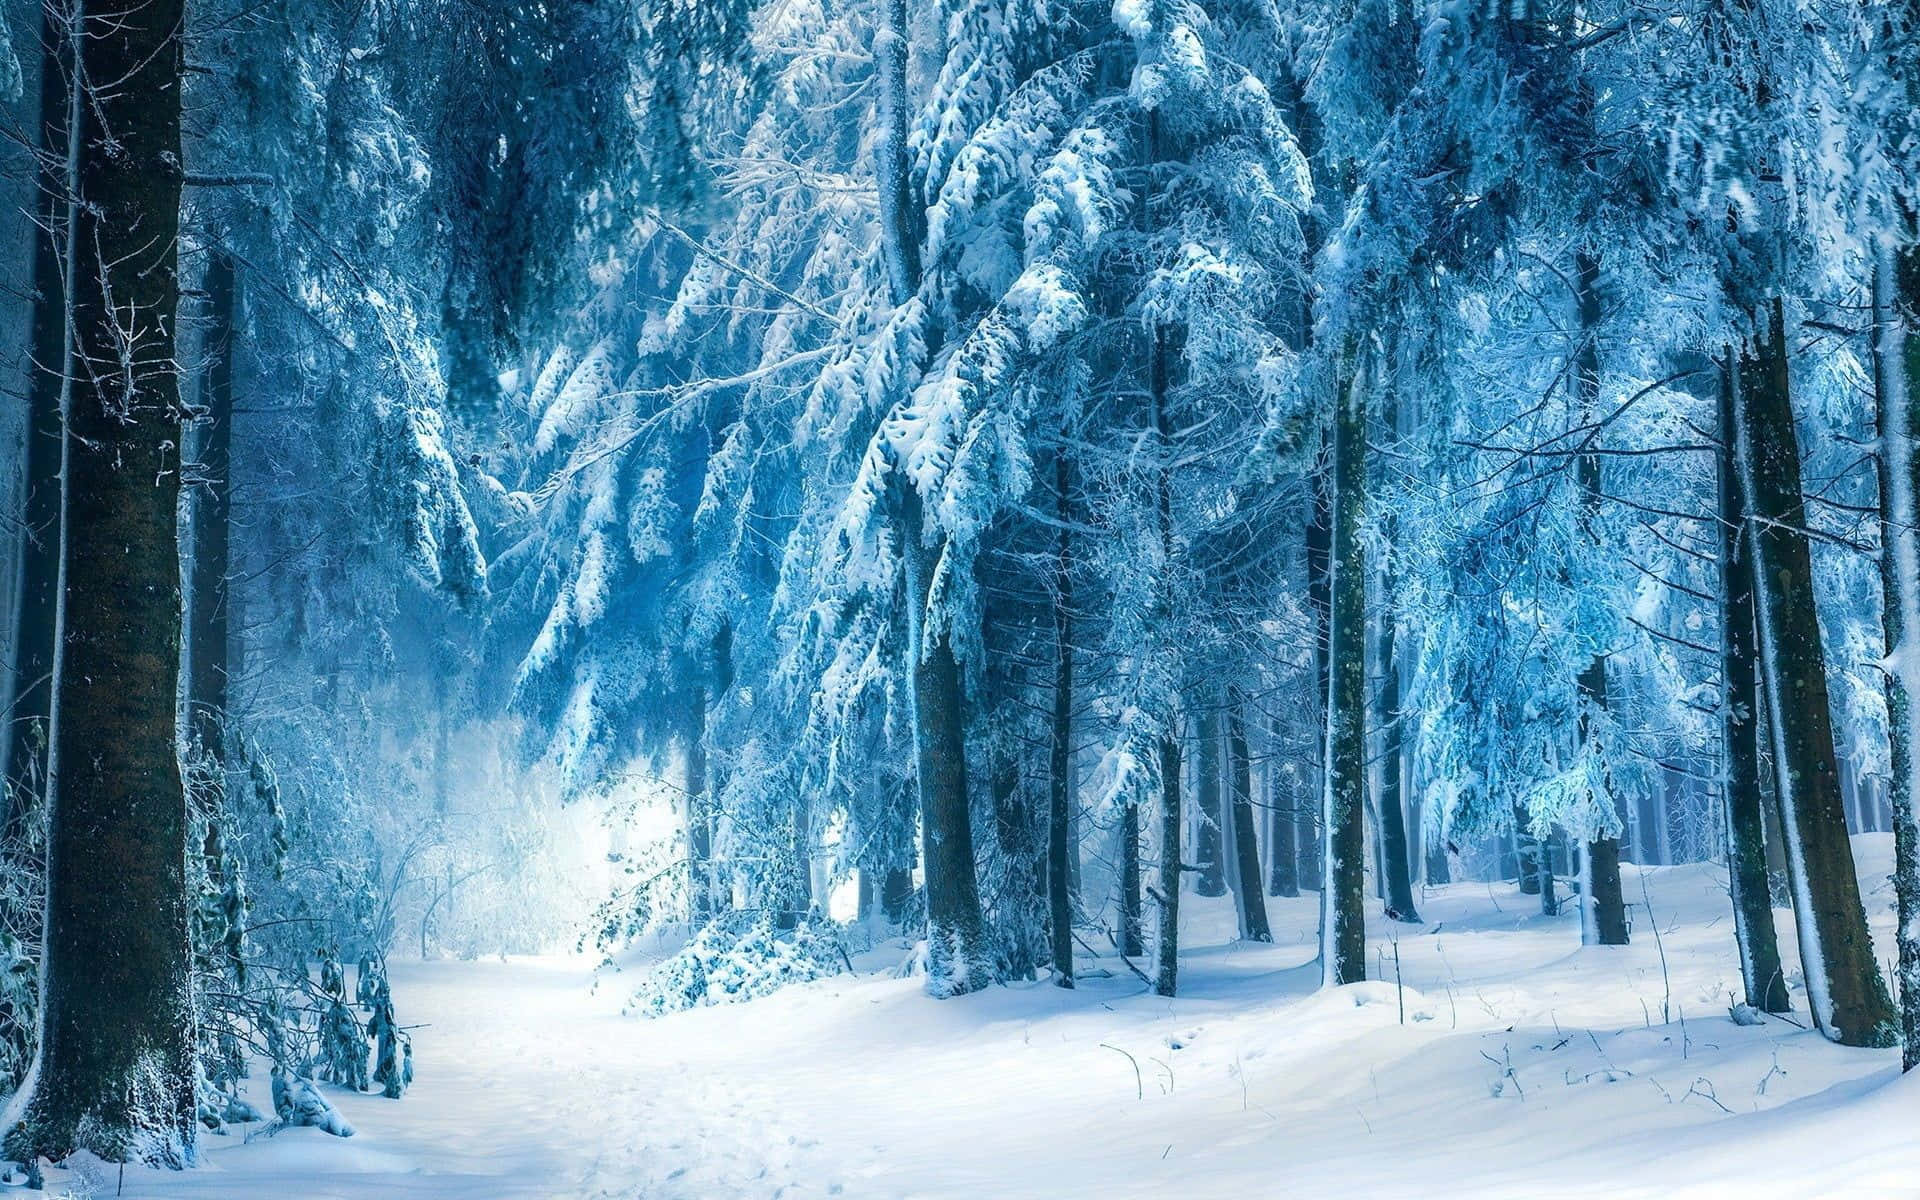 An idyllic snowy winter forest Wallpaper